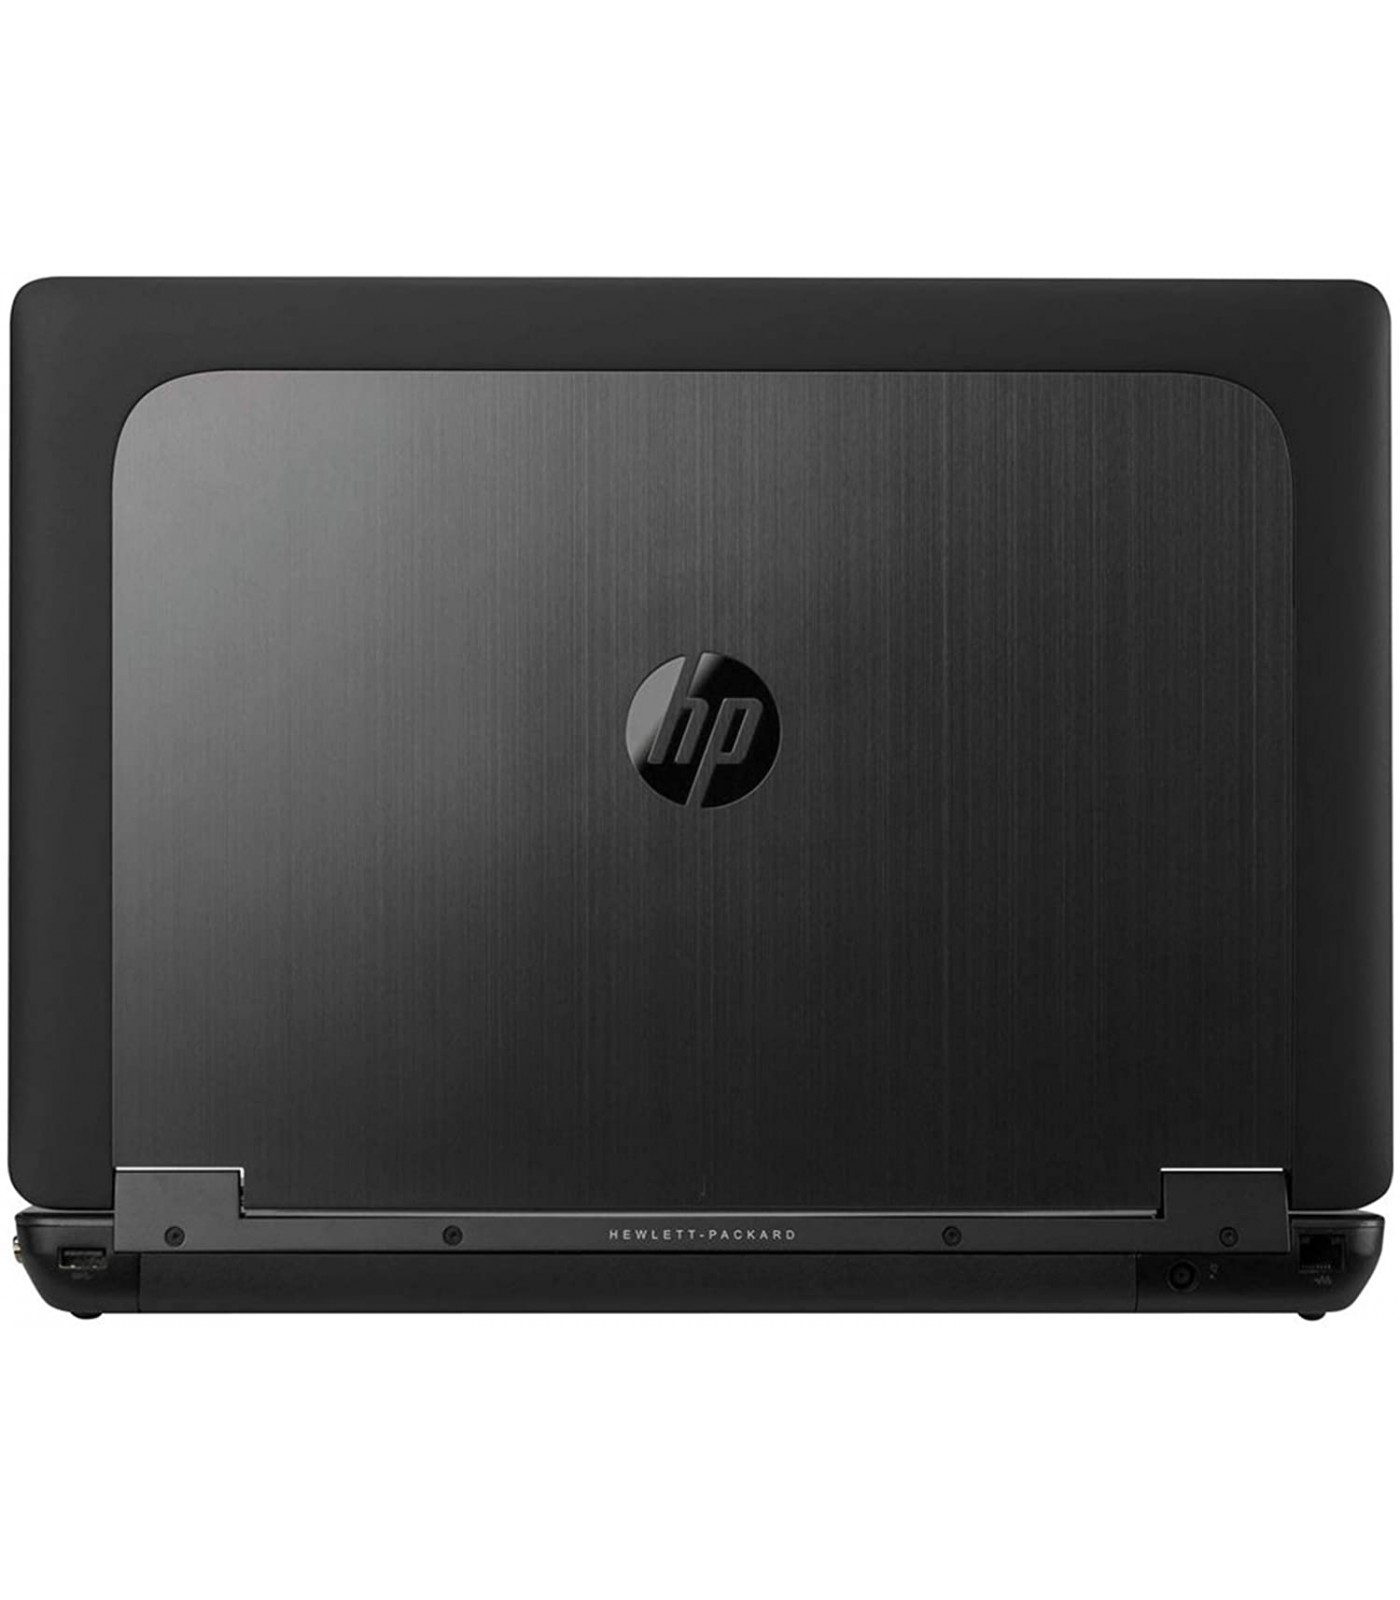 Poleasingowy laptop HP Zbook 15 G2 z Intel Core i7-4810MQ i kartą graficzną Nvidia Quadro K2100M, Klasa A+